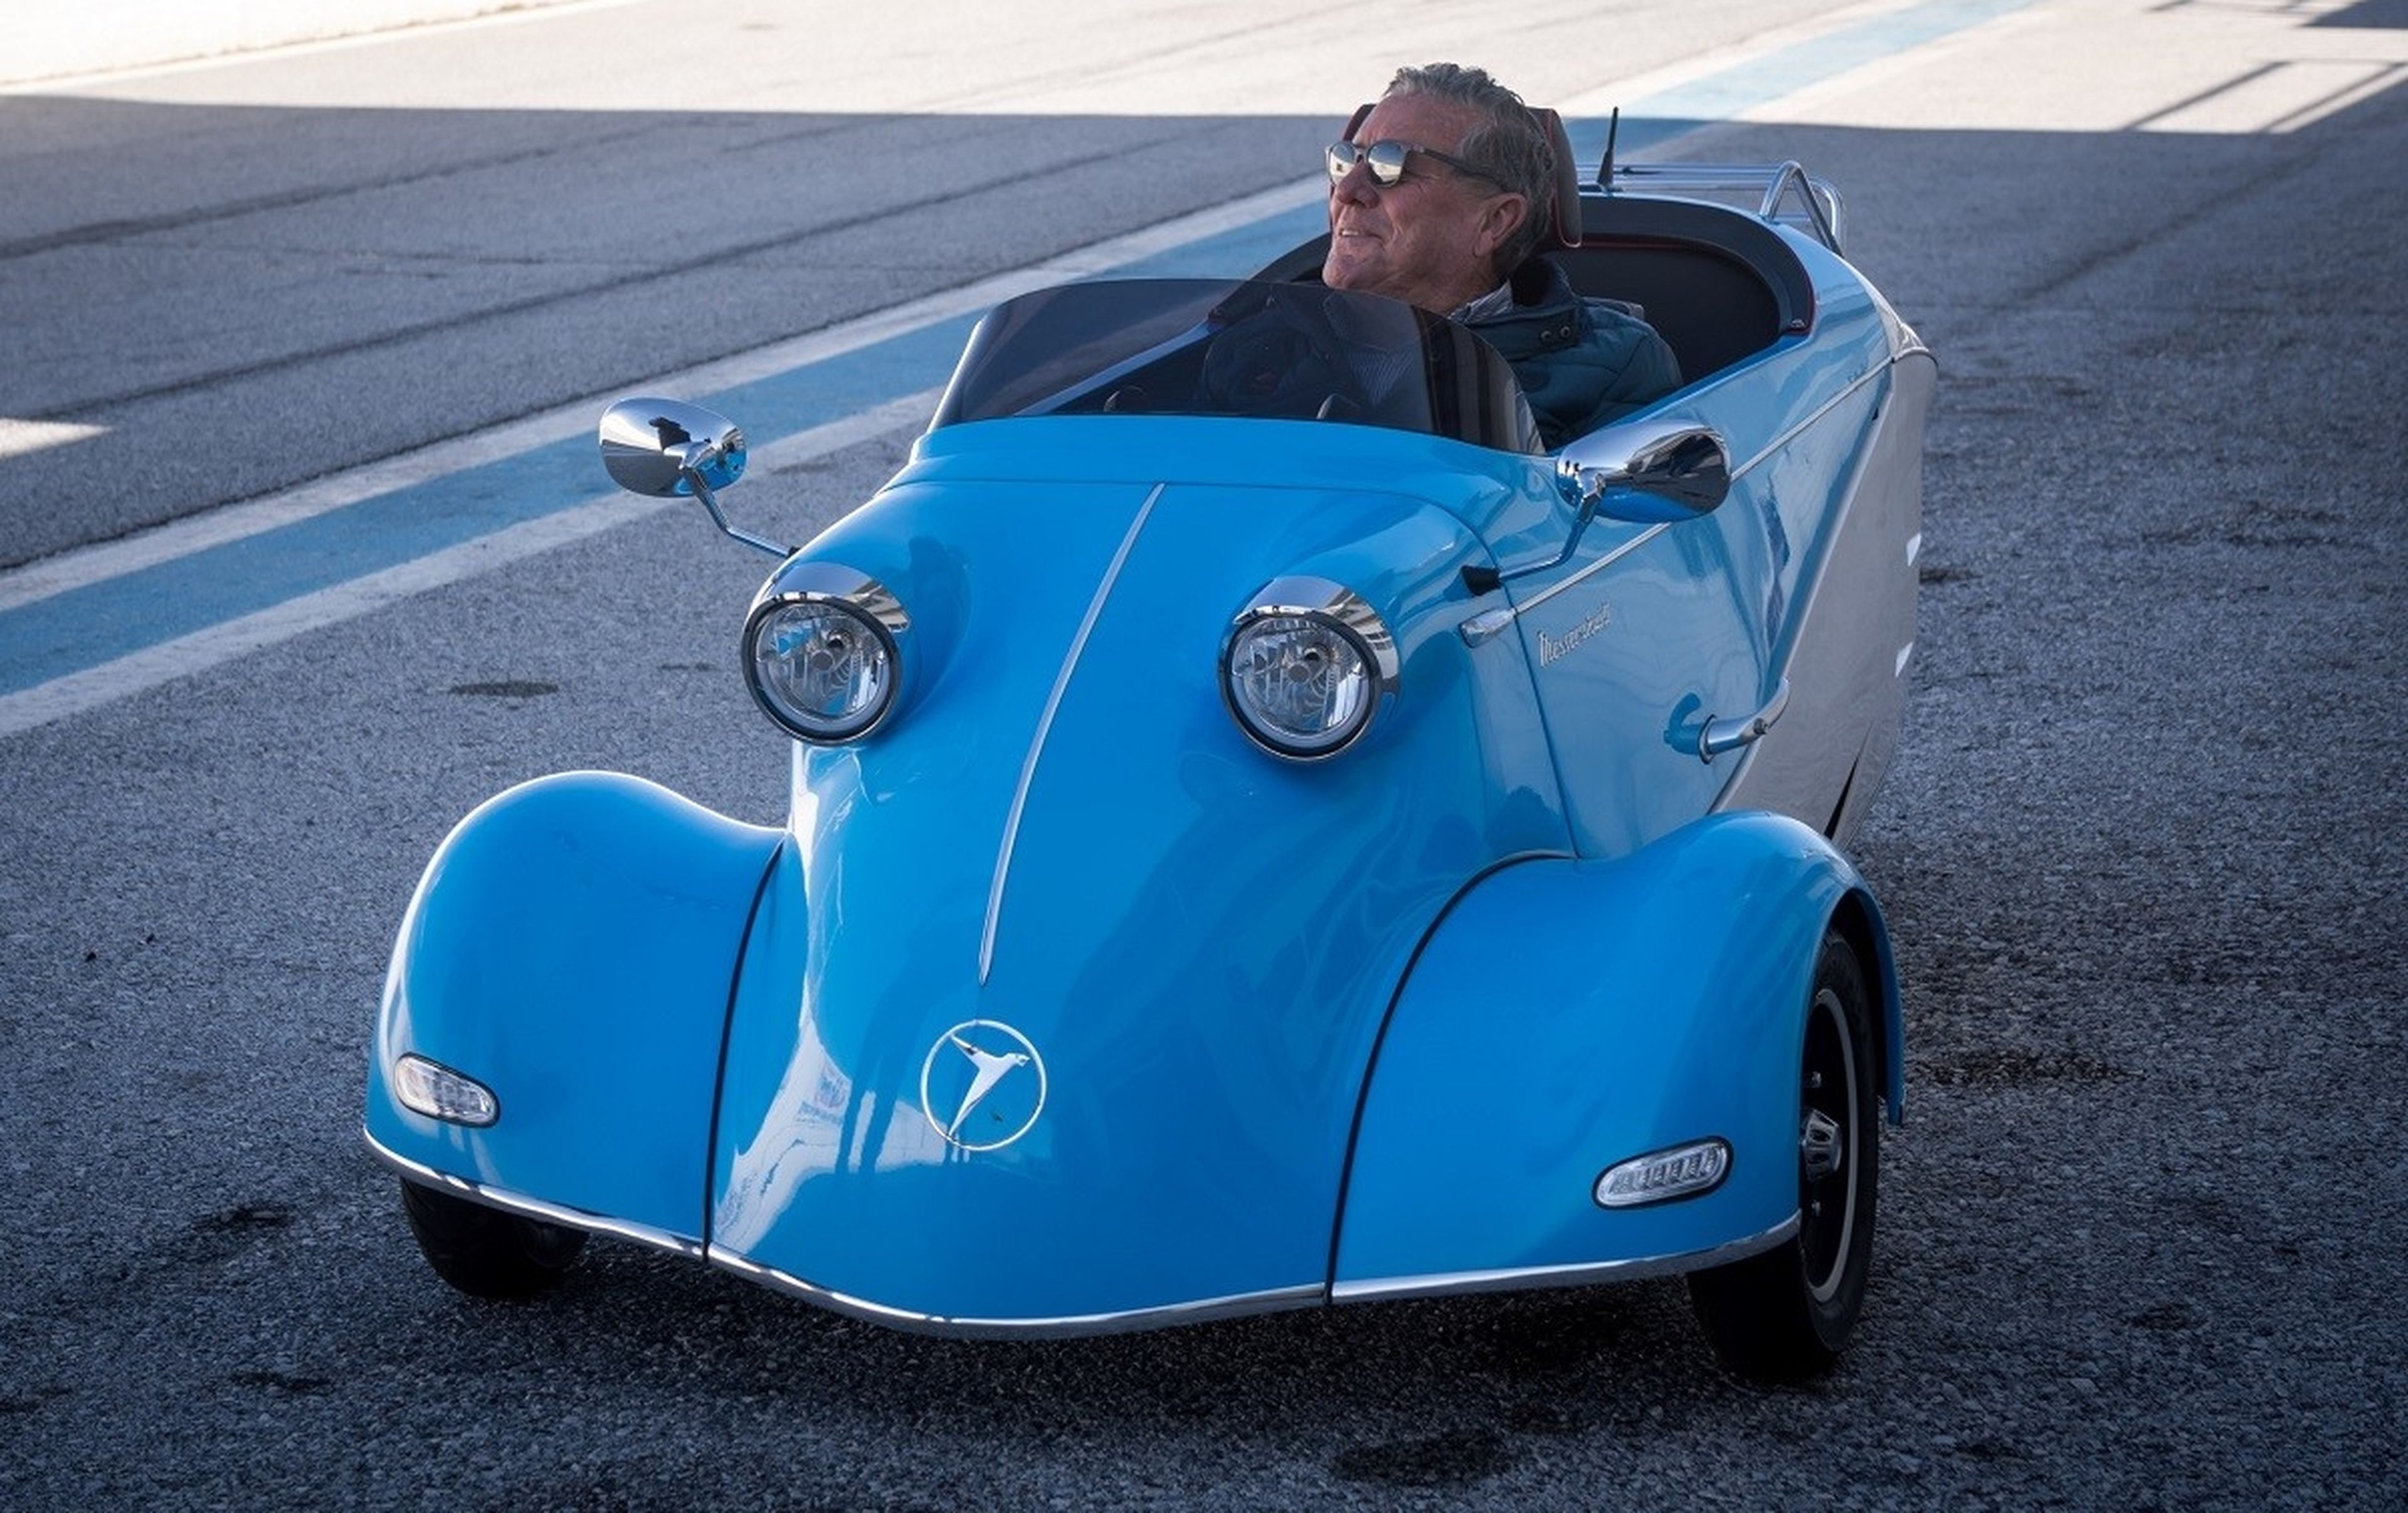 El mítico Kabinenroller de Messerschmitt vuelve 60 años después, fabricado en Andalucía